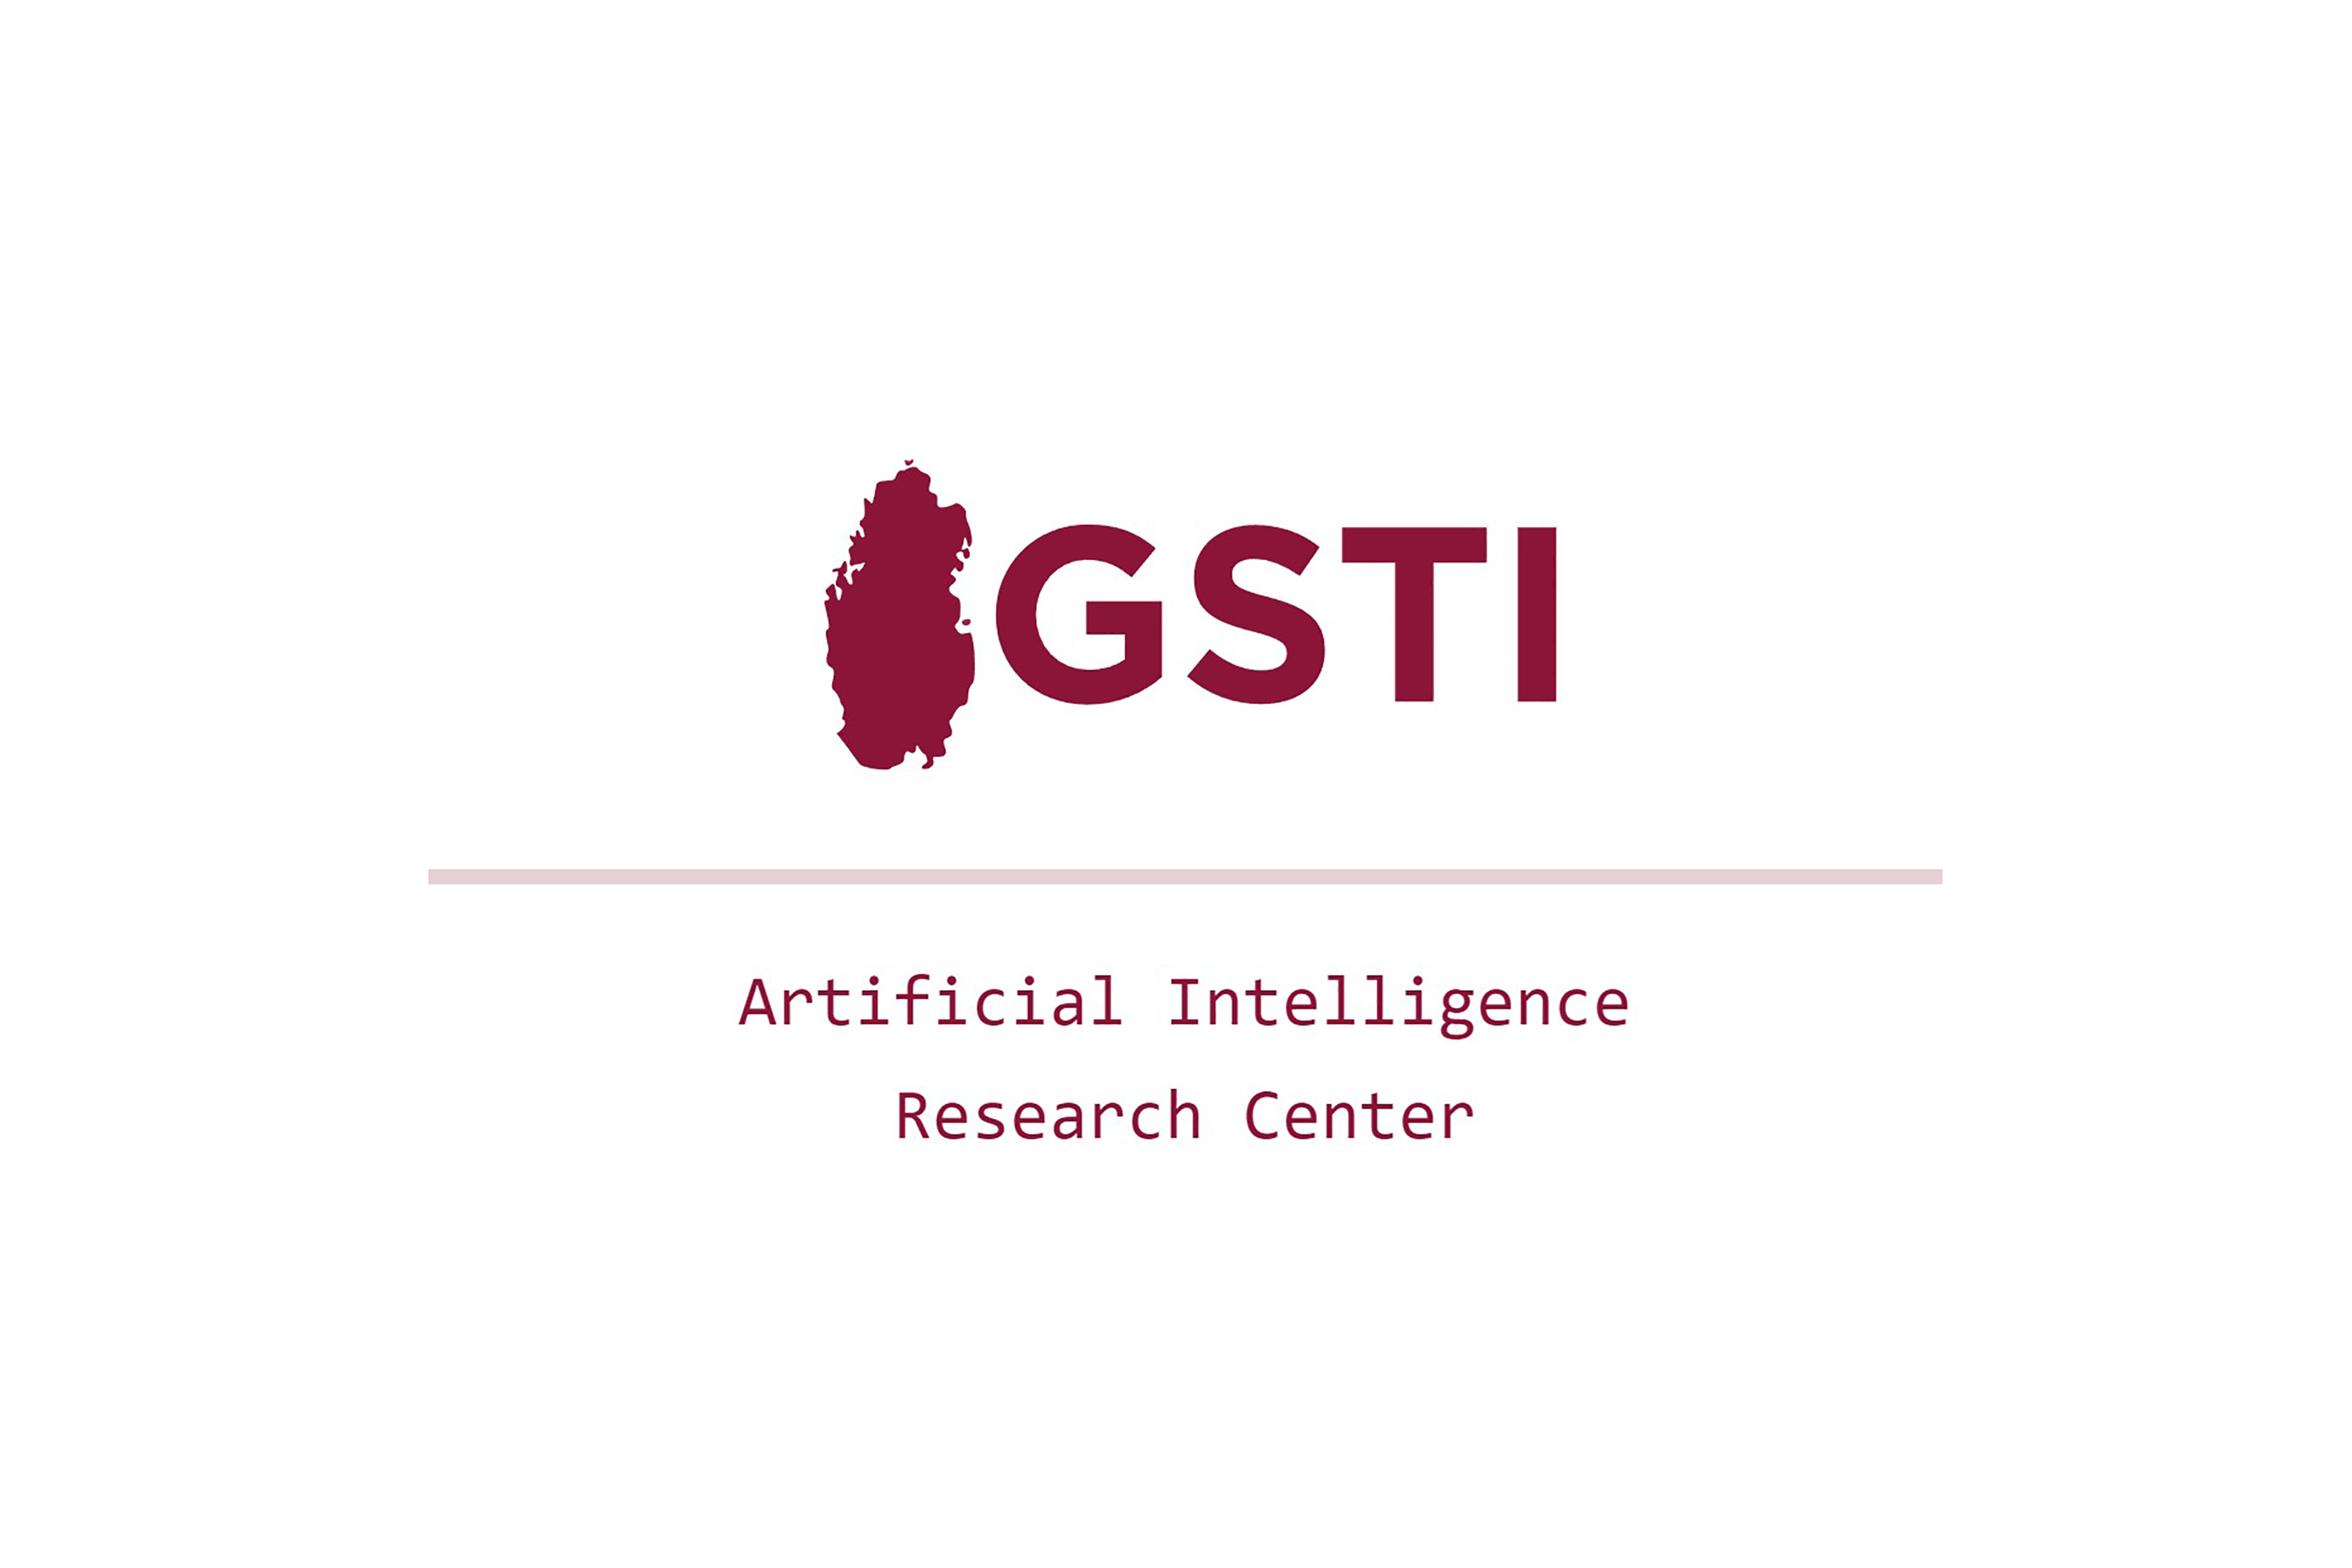 Isla Cloud realiza la Administración avanzada, hosting de la infraestructura Cloud y securización de : GSTI | Artificial Intelligence Research Center